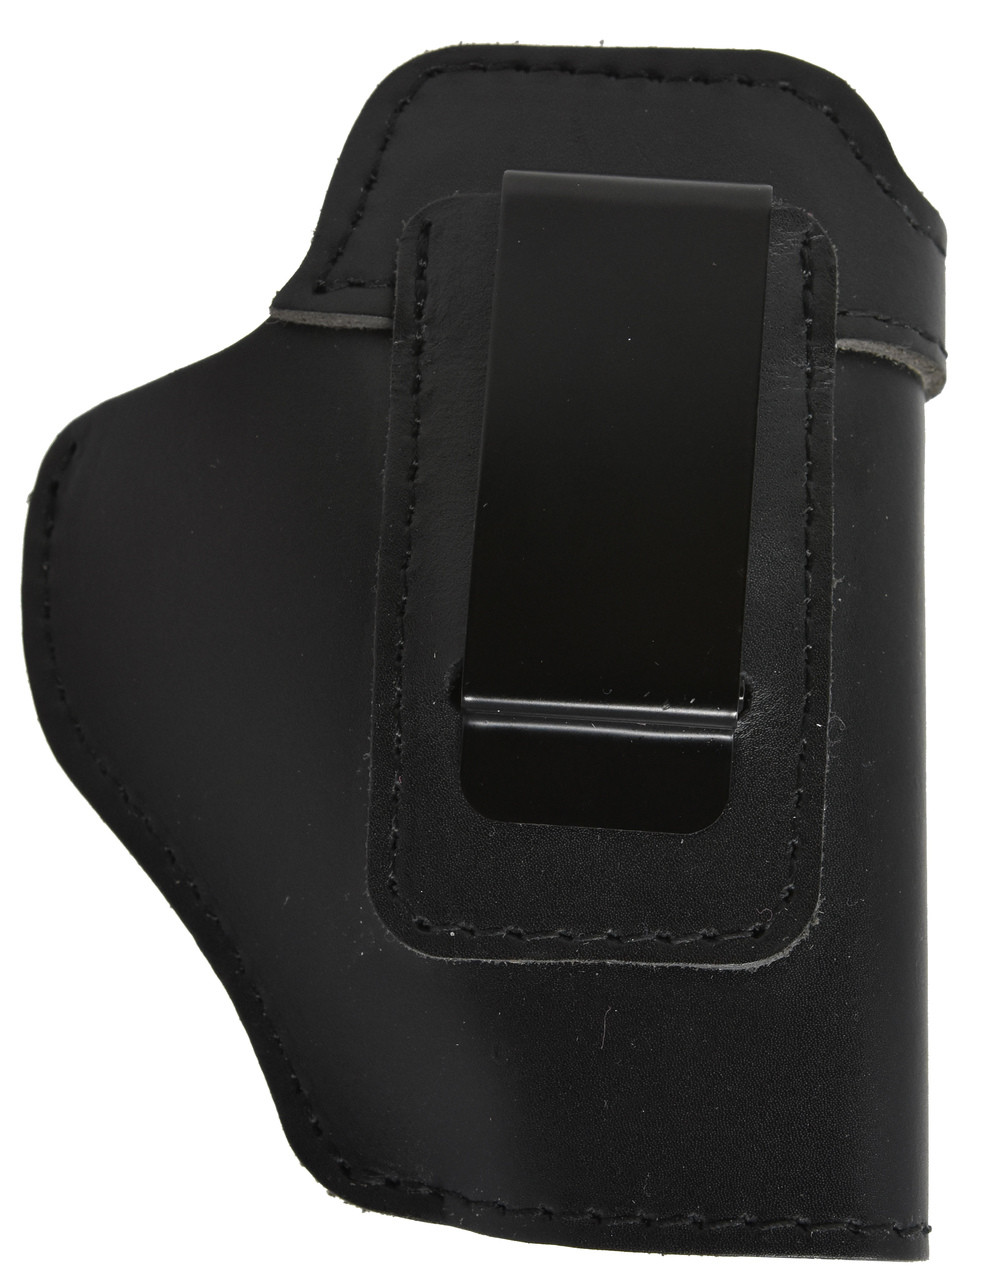 Garrison Grip Black Leather IWB Holster for Taurus PT111 Gen2 G2  G2c Millennium